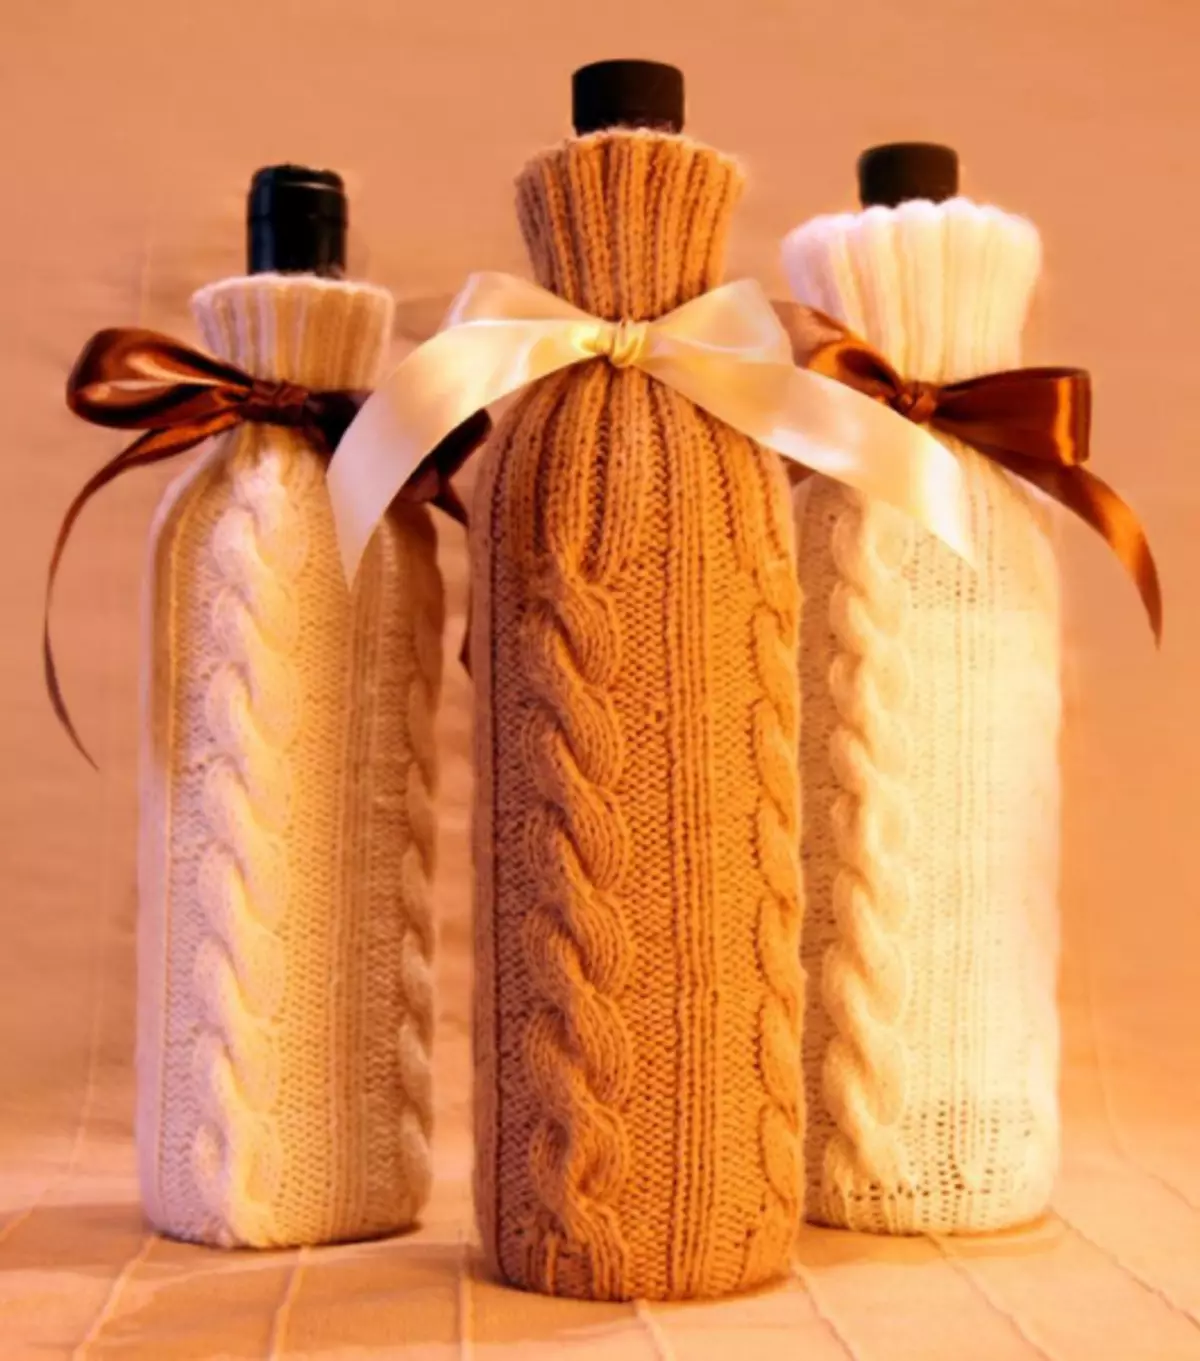 Περίπτωση σε ένα μπουκάλι με το δικό σας crochet στις 23 Φεβρουαρίου